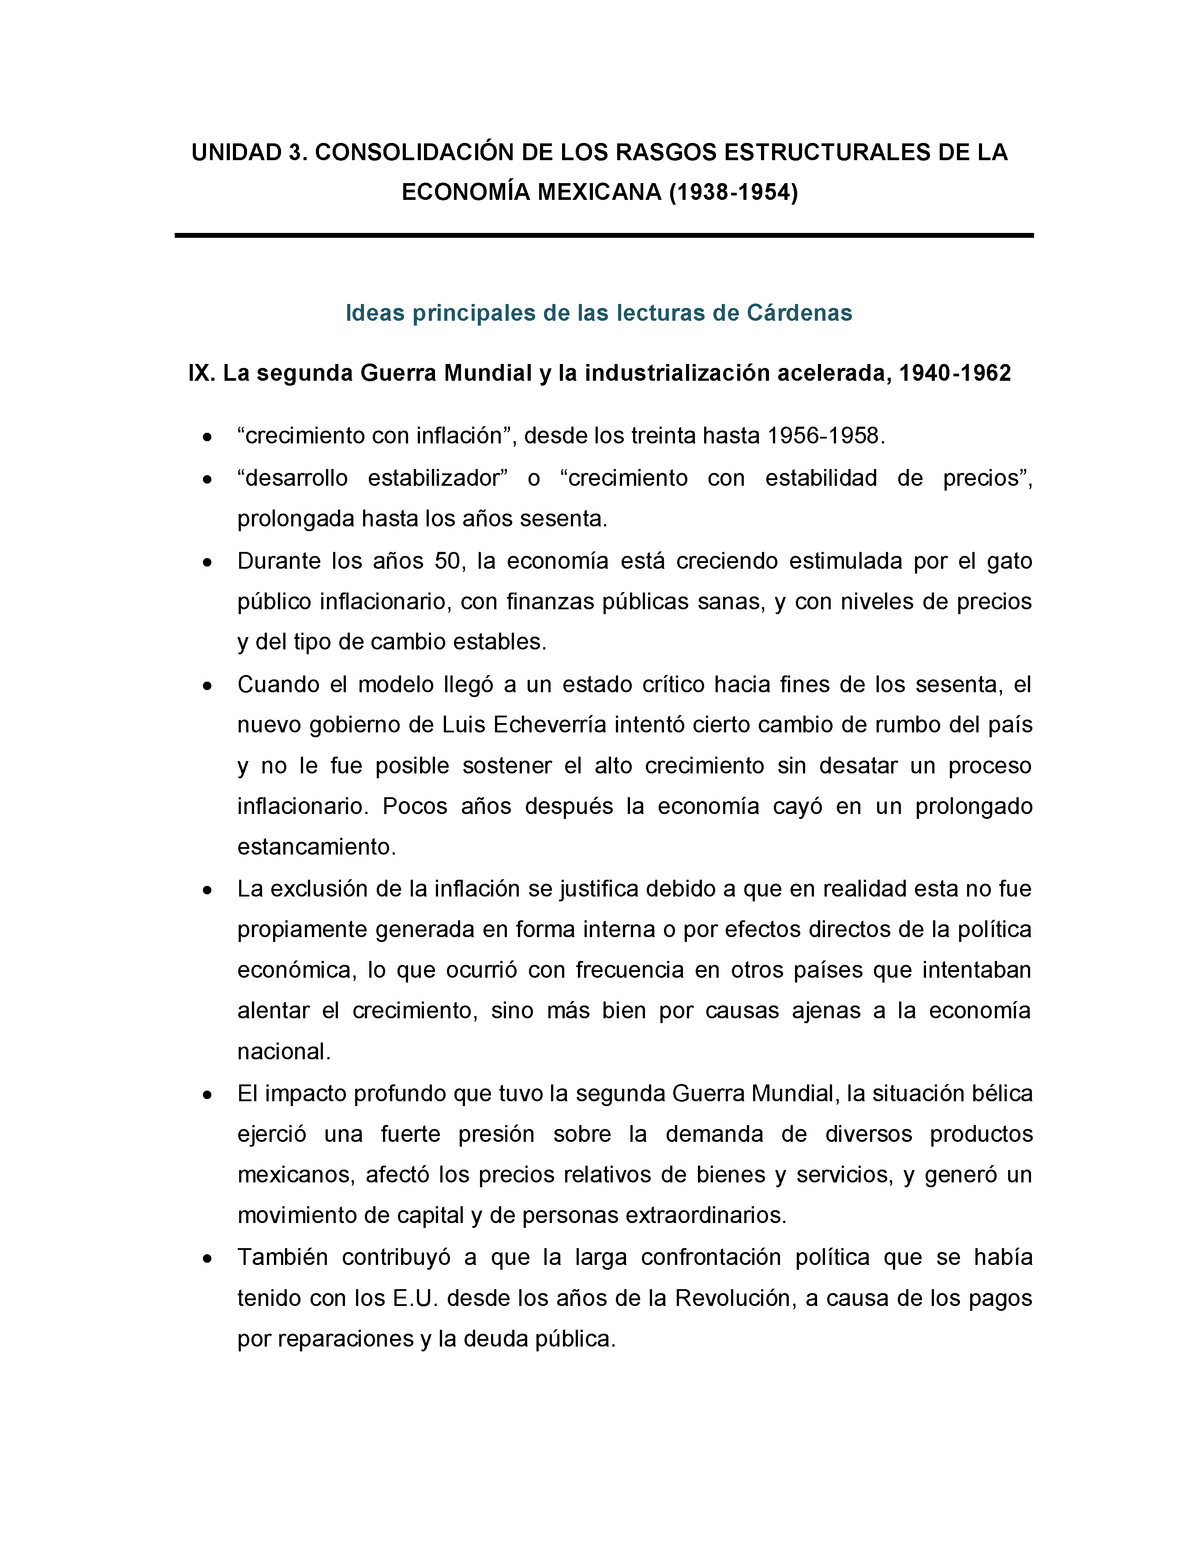 Consolidación de los rasgos estructurales de la economía mexicana  (1938-1954) - UNIDAD 3. - Studocu